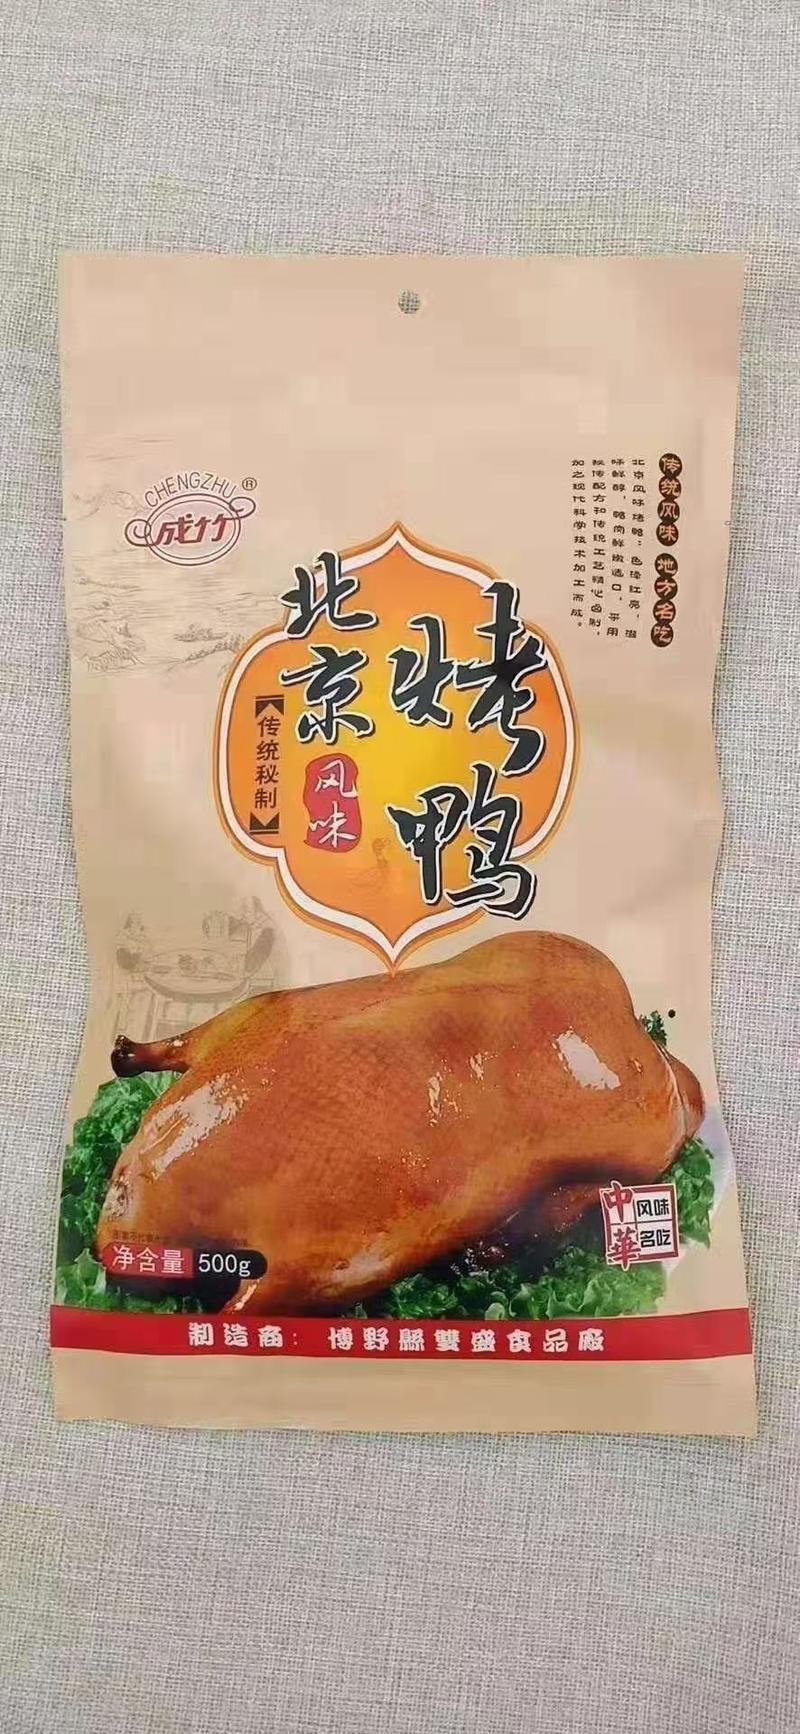 德州扒鸡德州风味扒鸡北京风味烤鸭精品熟食